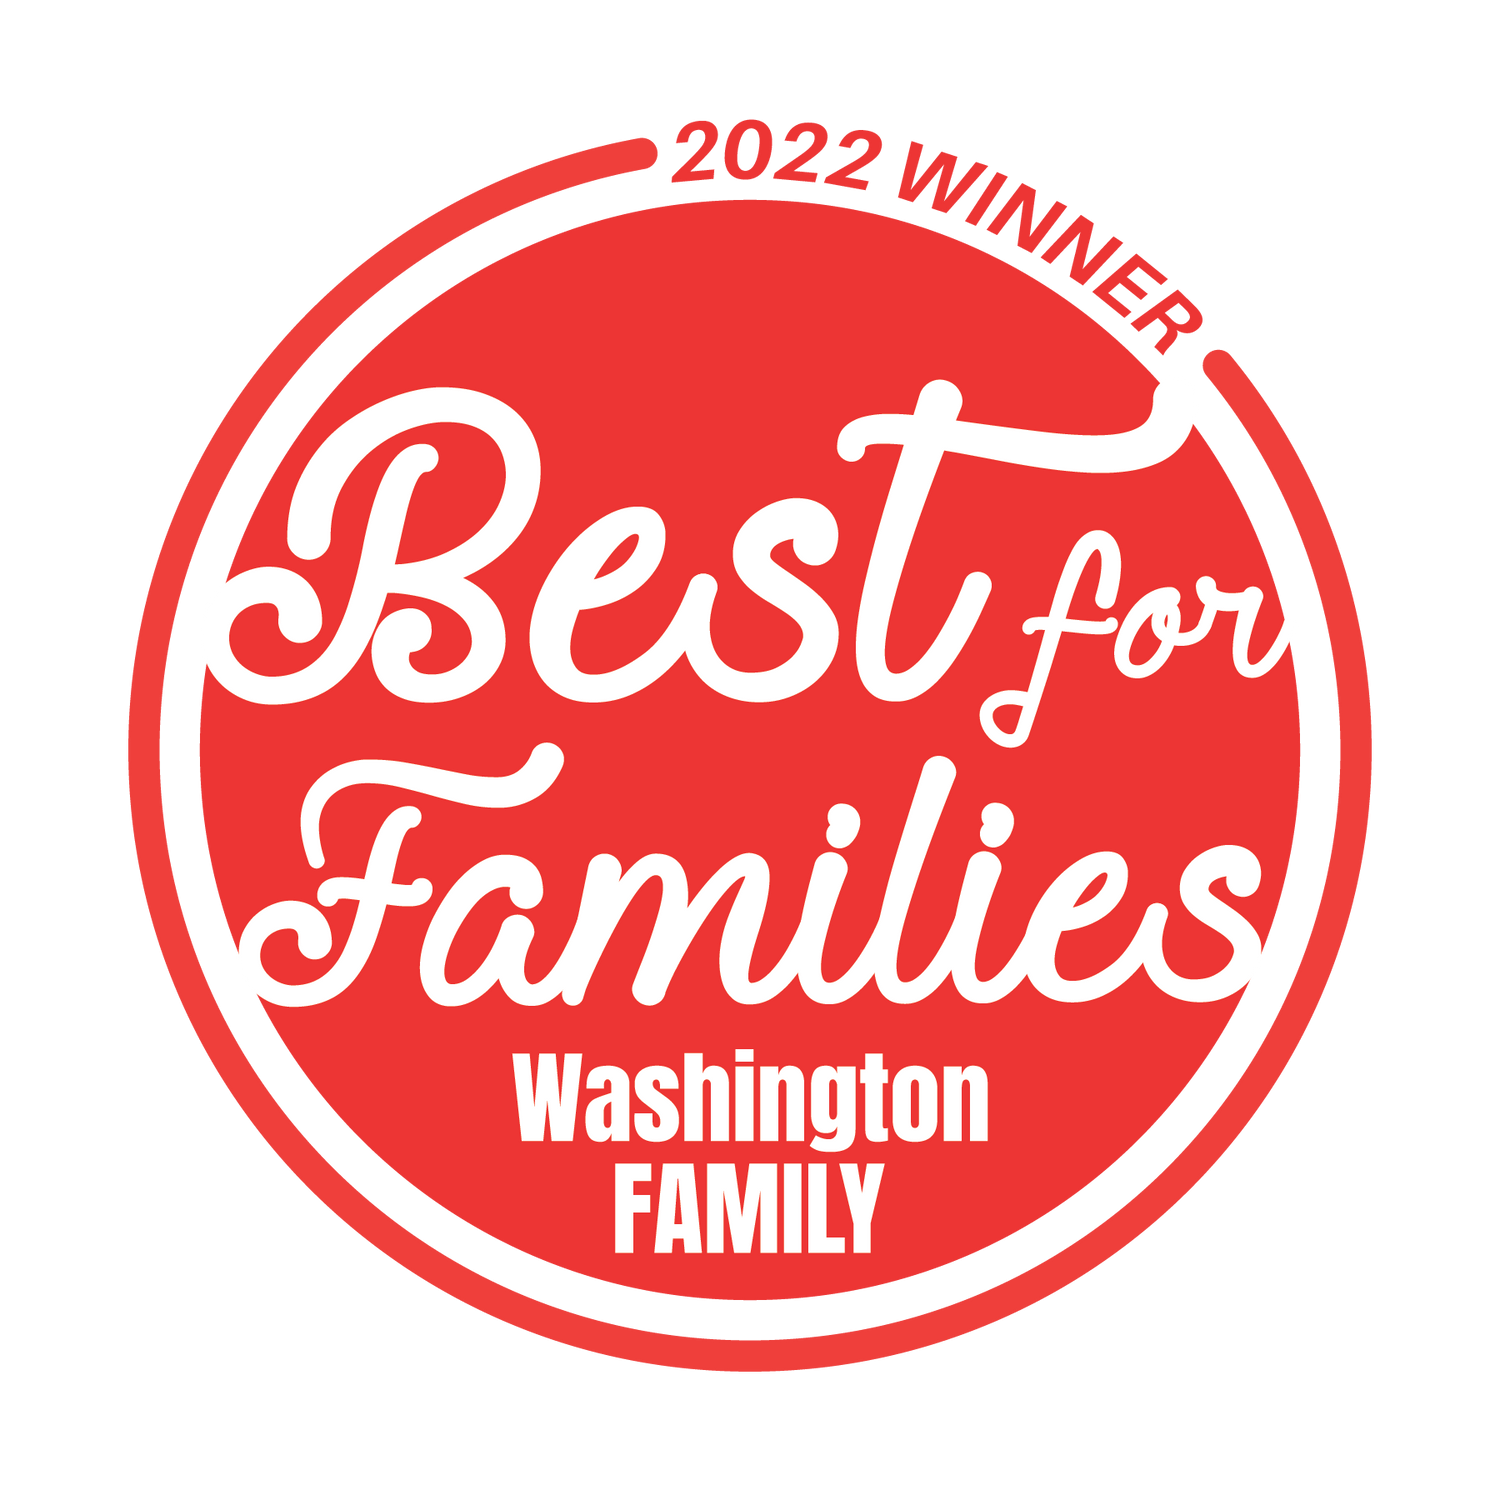 Best for Families 2022 winner